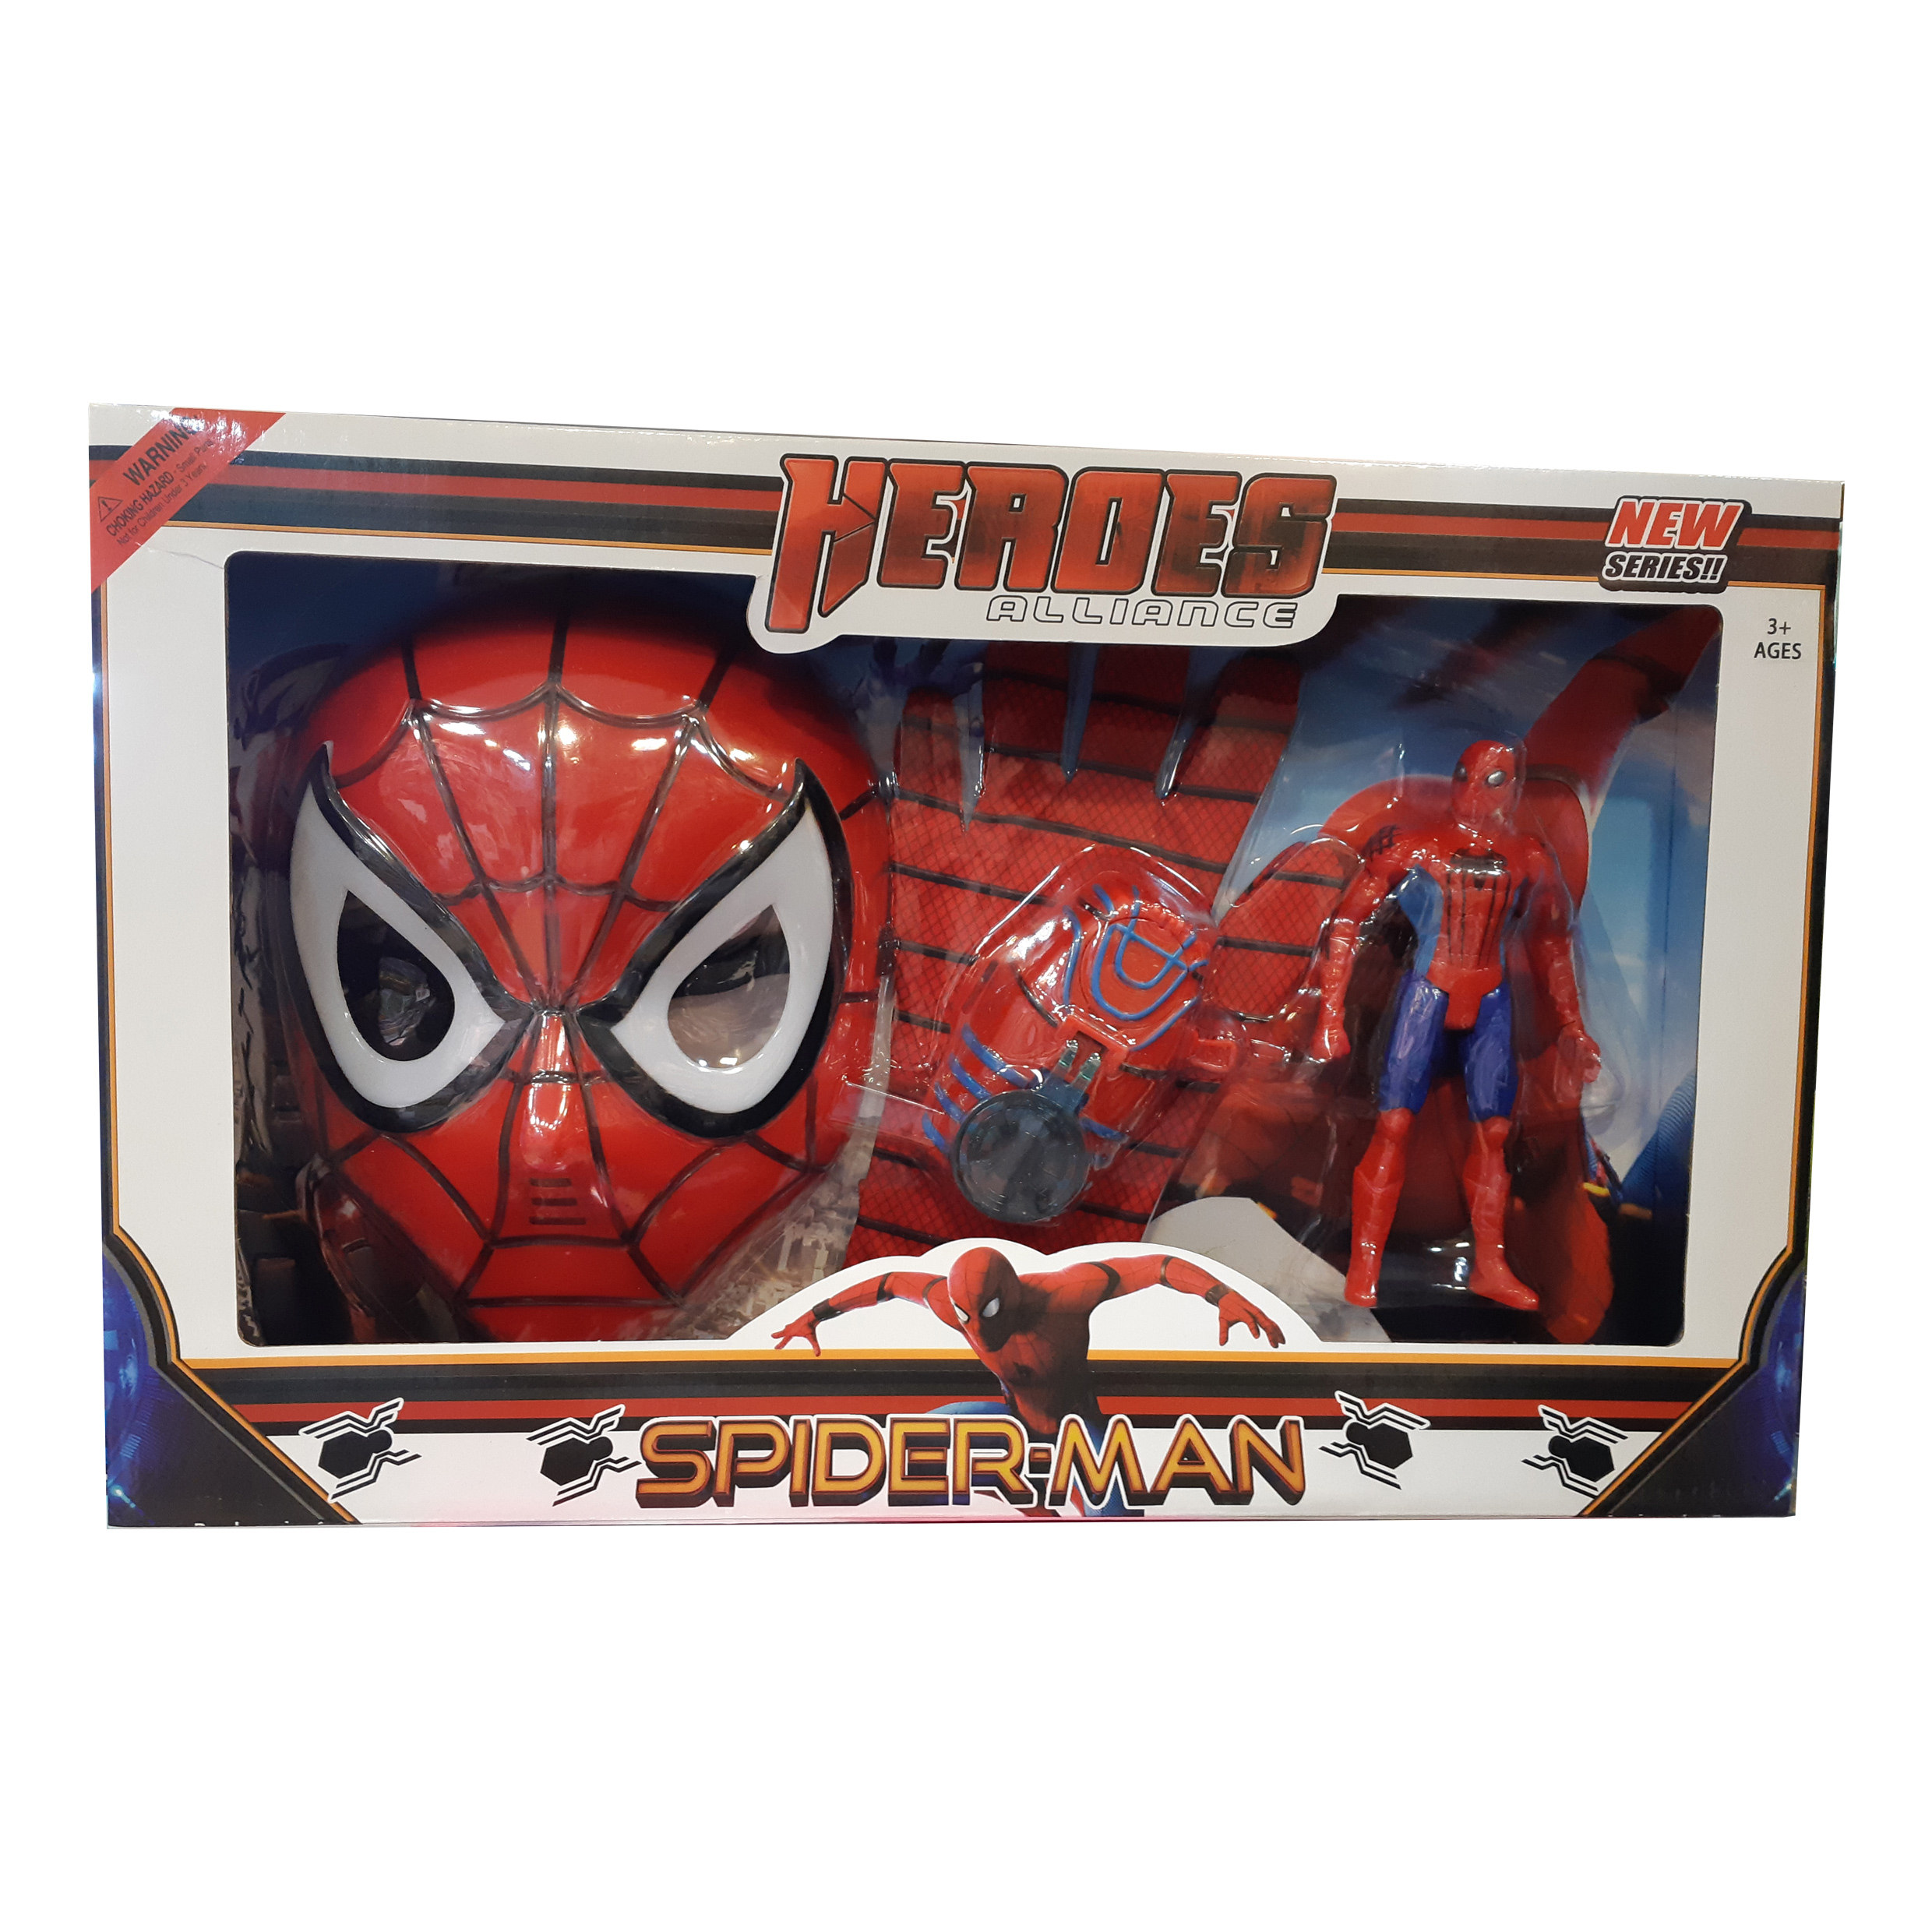 ست ماسک دستکش و آدمک اسپایدرمن مدل 3028 Spiderman